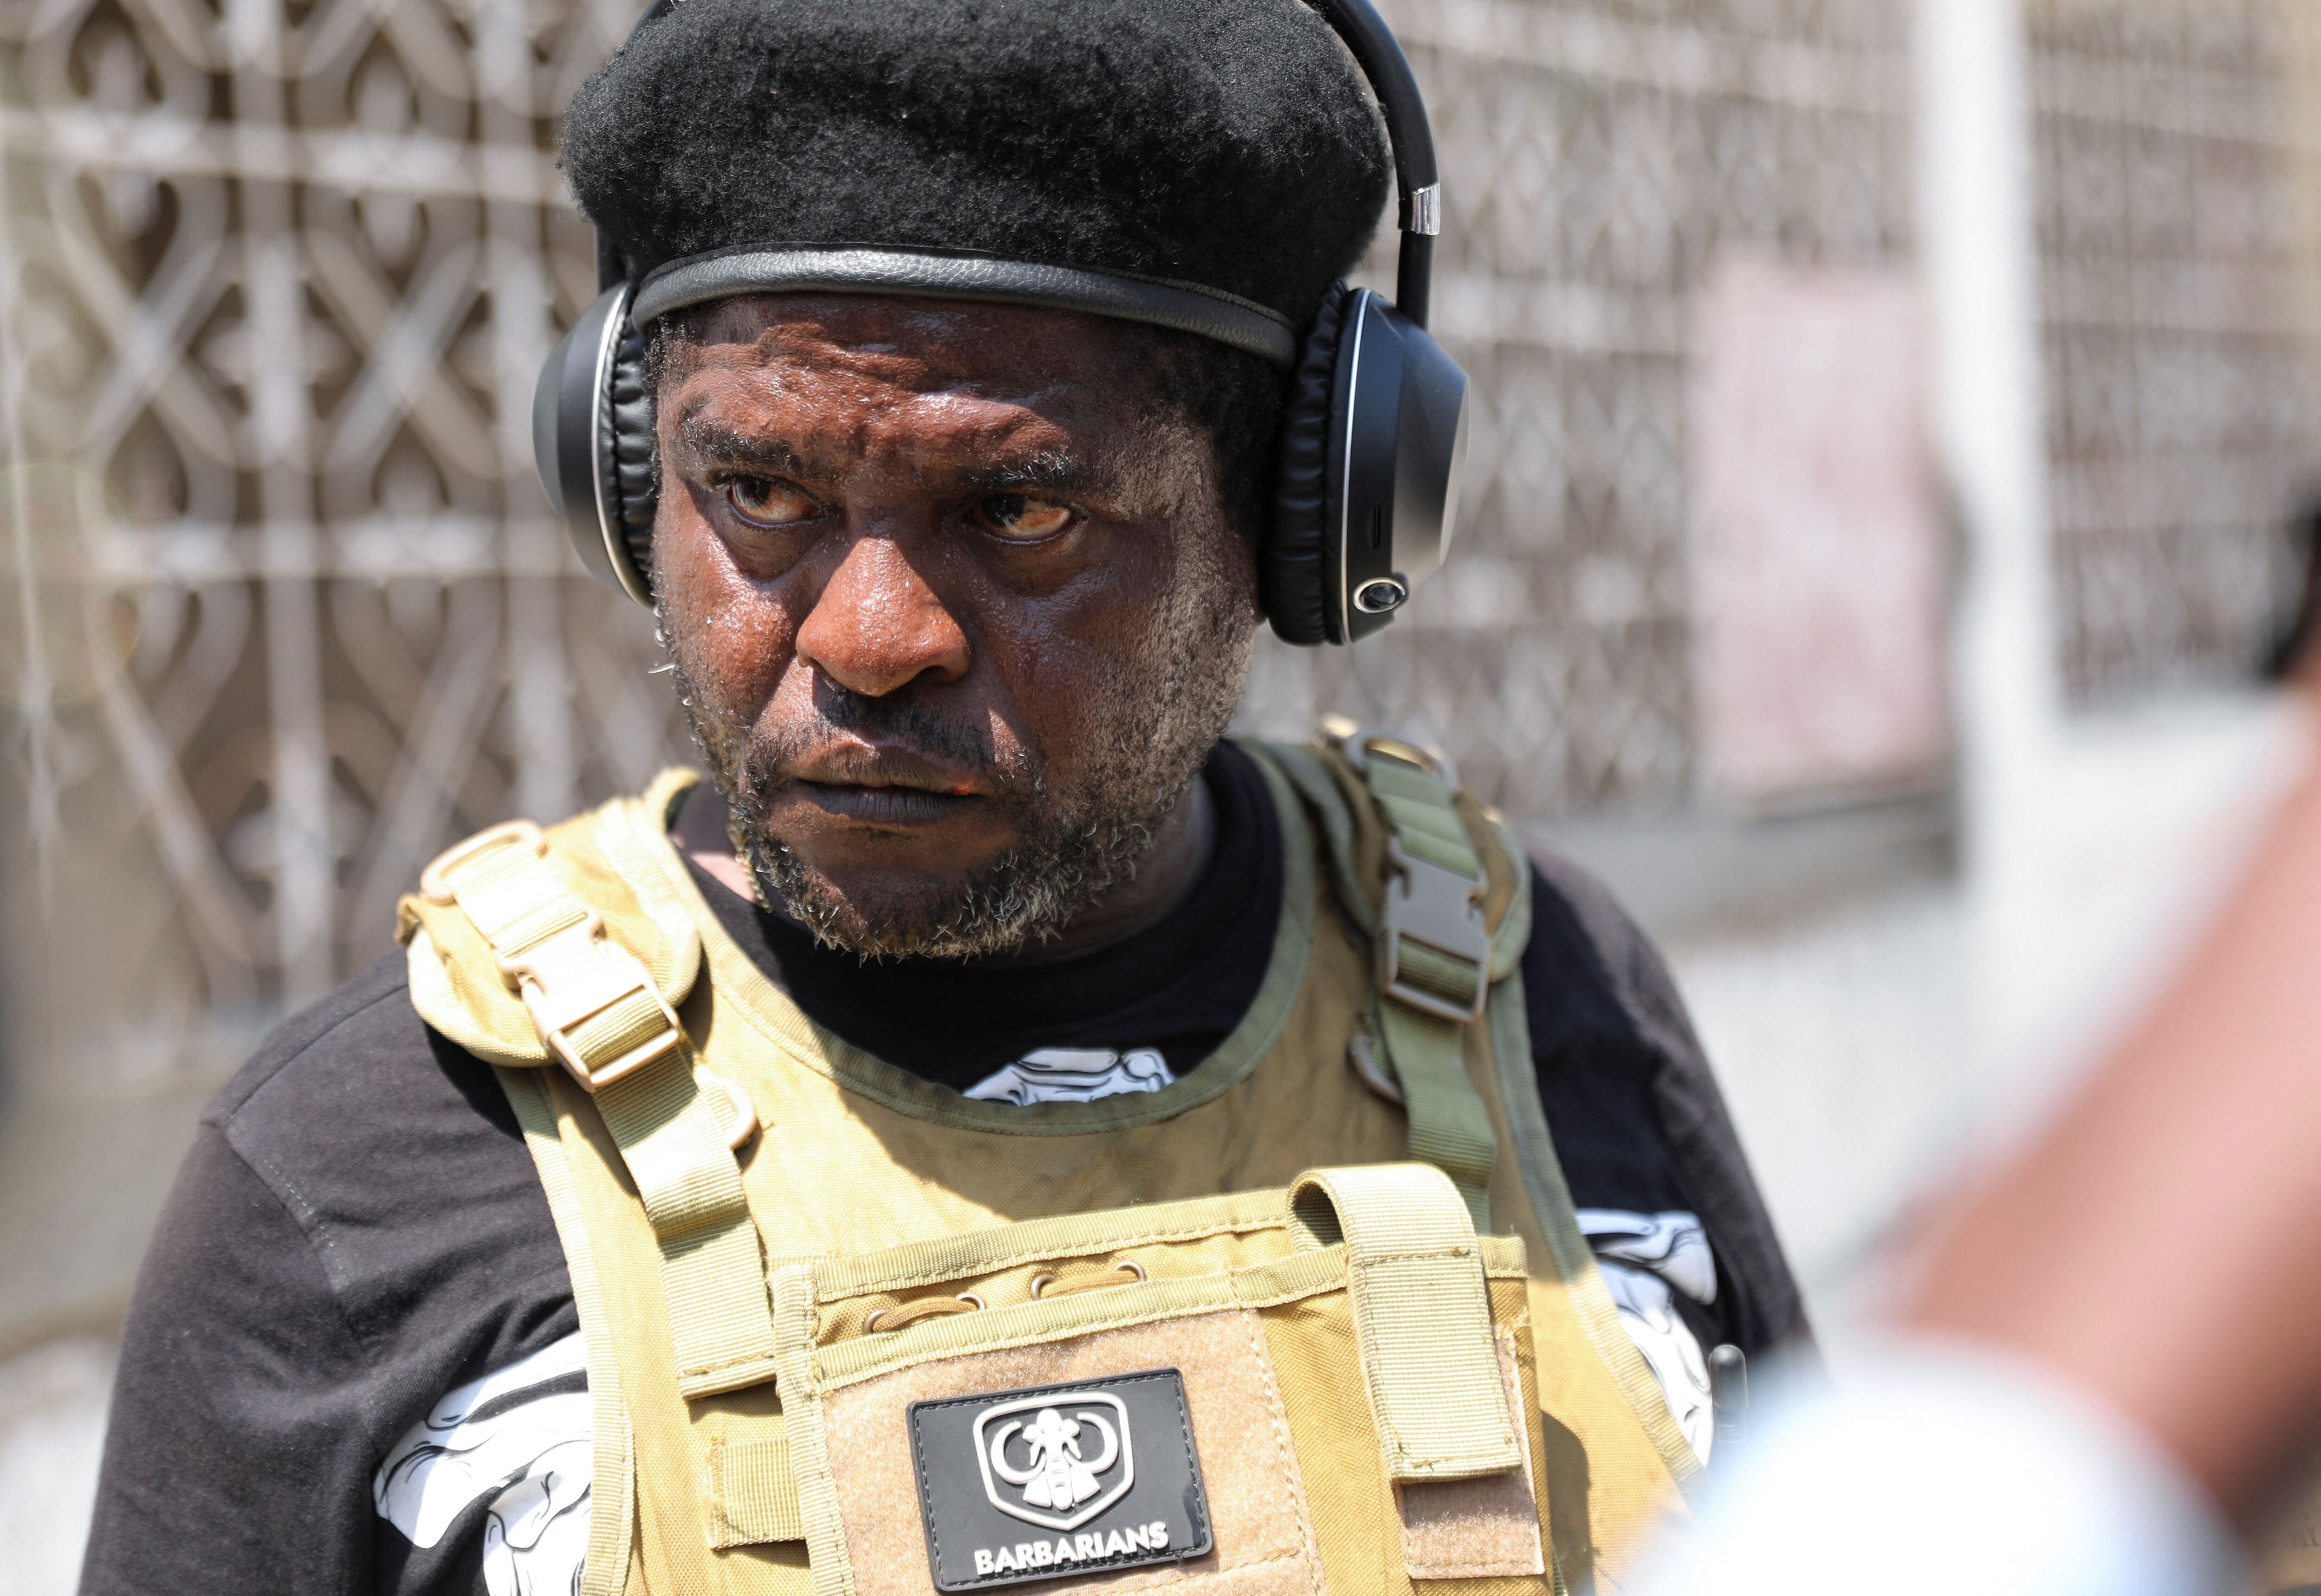 El poderoso líder pandillero Jimmy “Barbecue” Chérizier, cuya alianza G9 de 1.000 miembros controla partes de Puerto Príncipe, fue uno de los excluidos del nuevo gobierno (REUTERS/Ralph Tedy Erol)